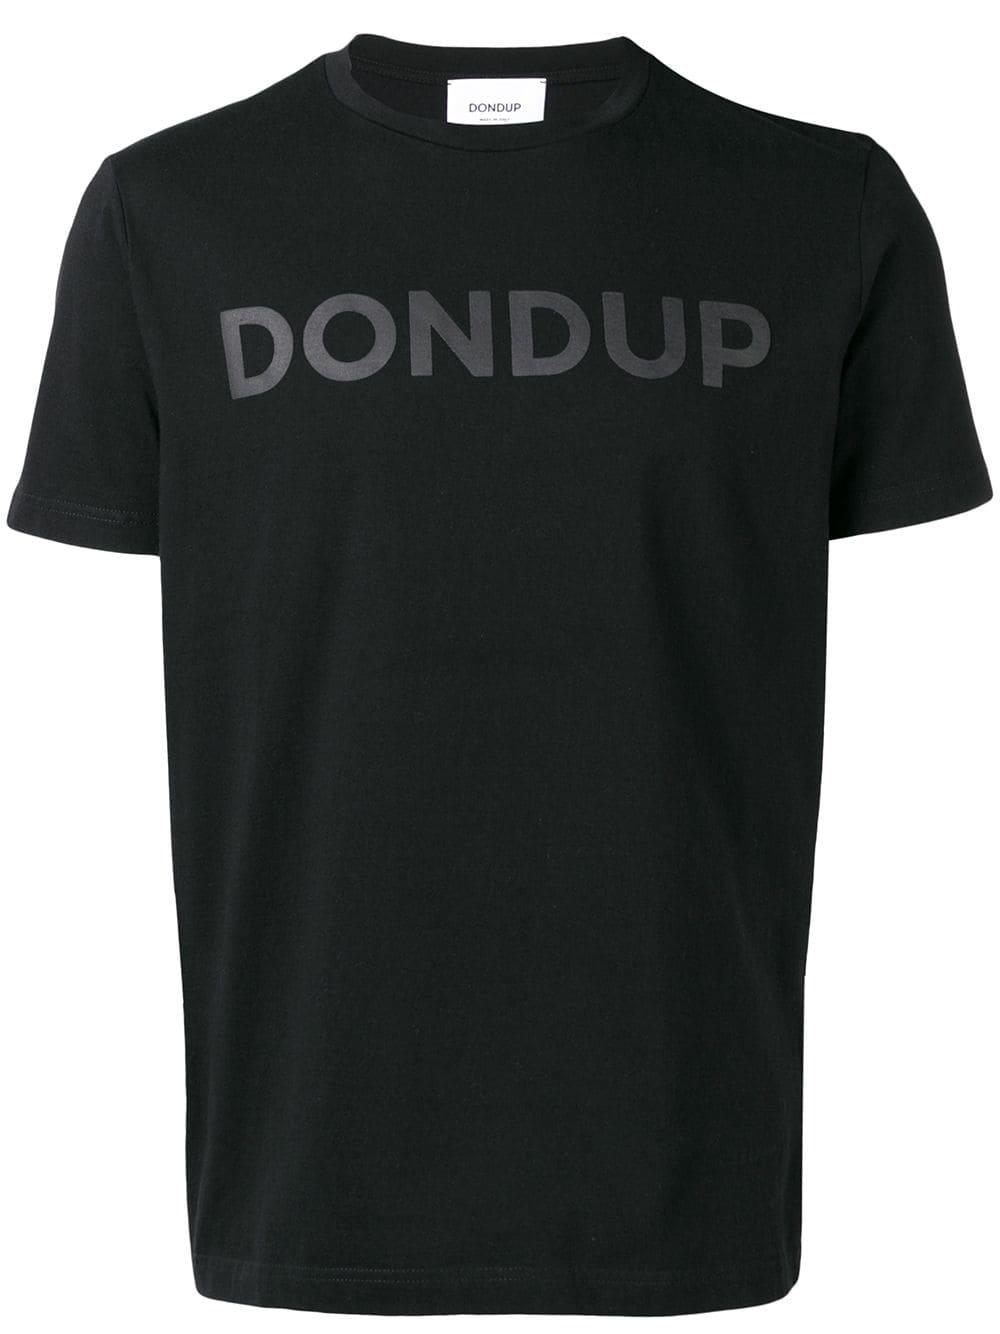 Dondup Logo T-shirt in Black for Men - Lyst